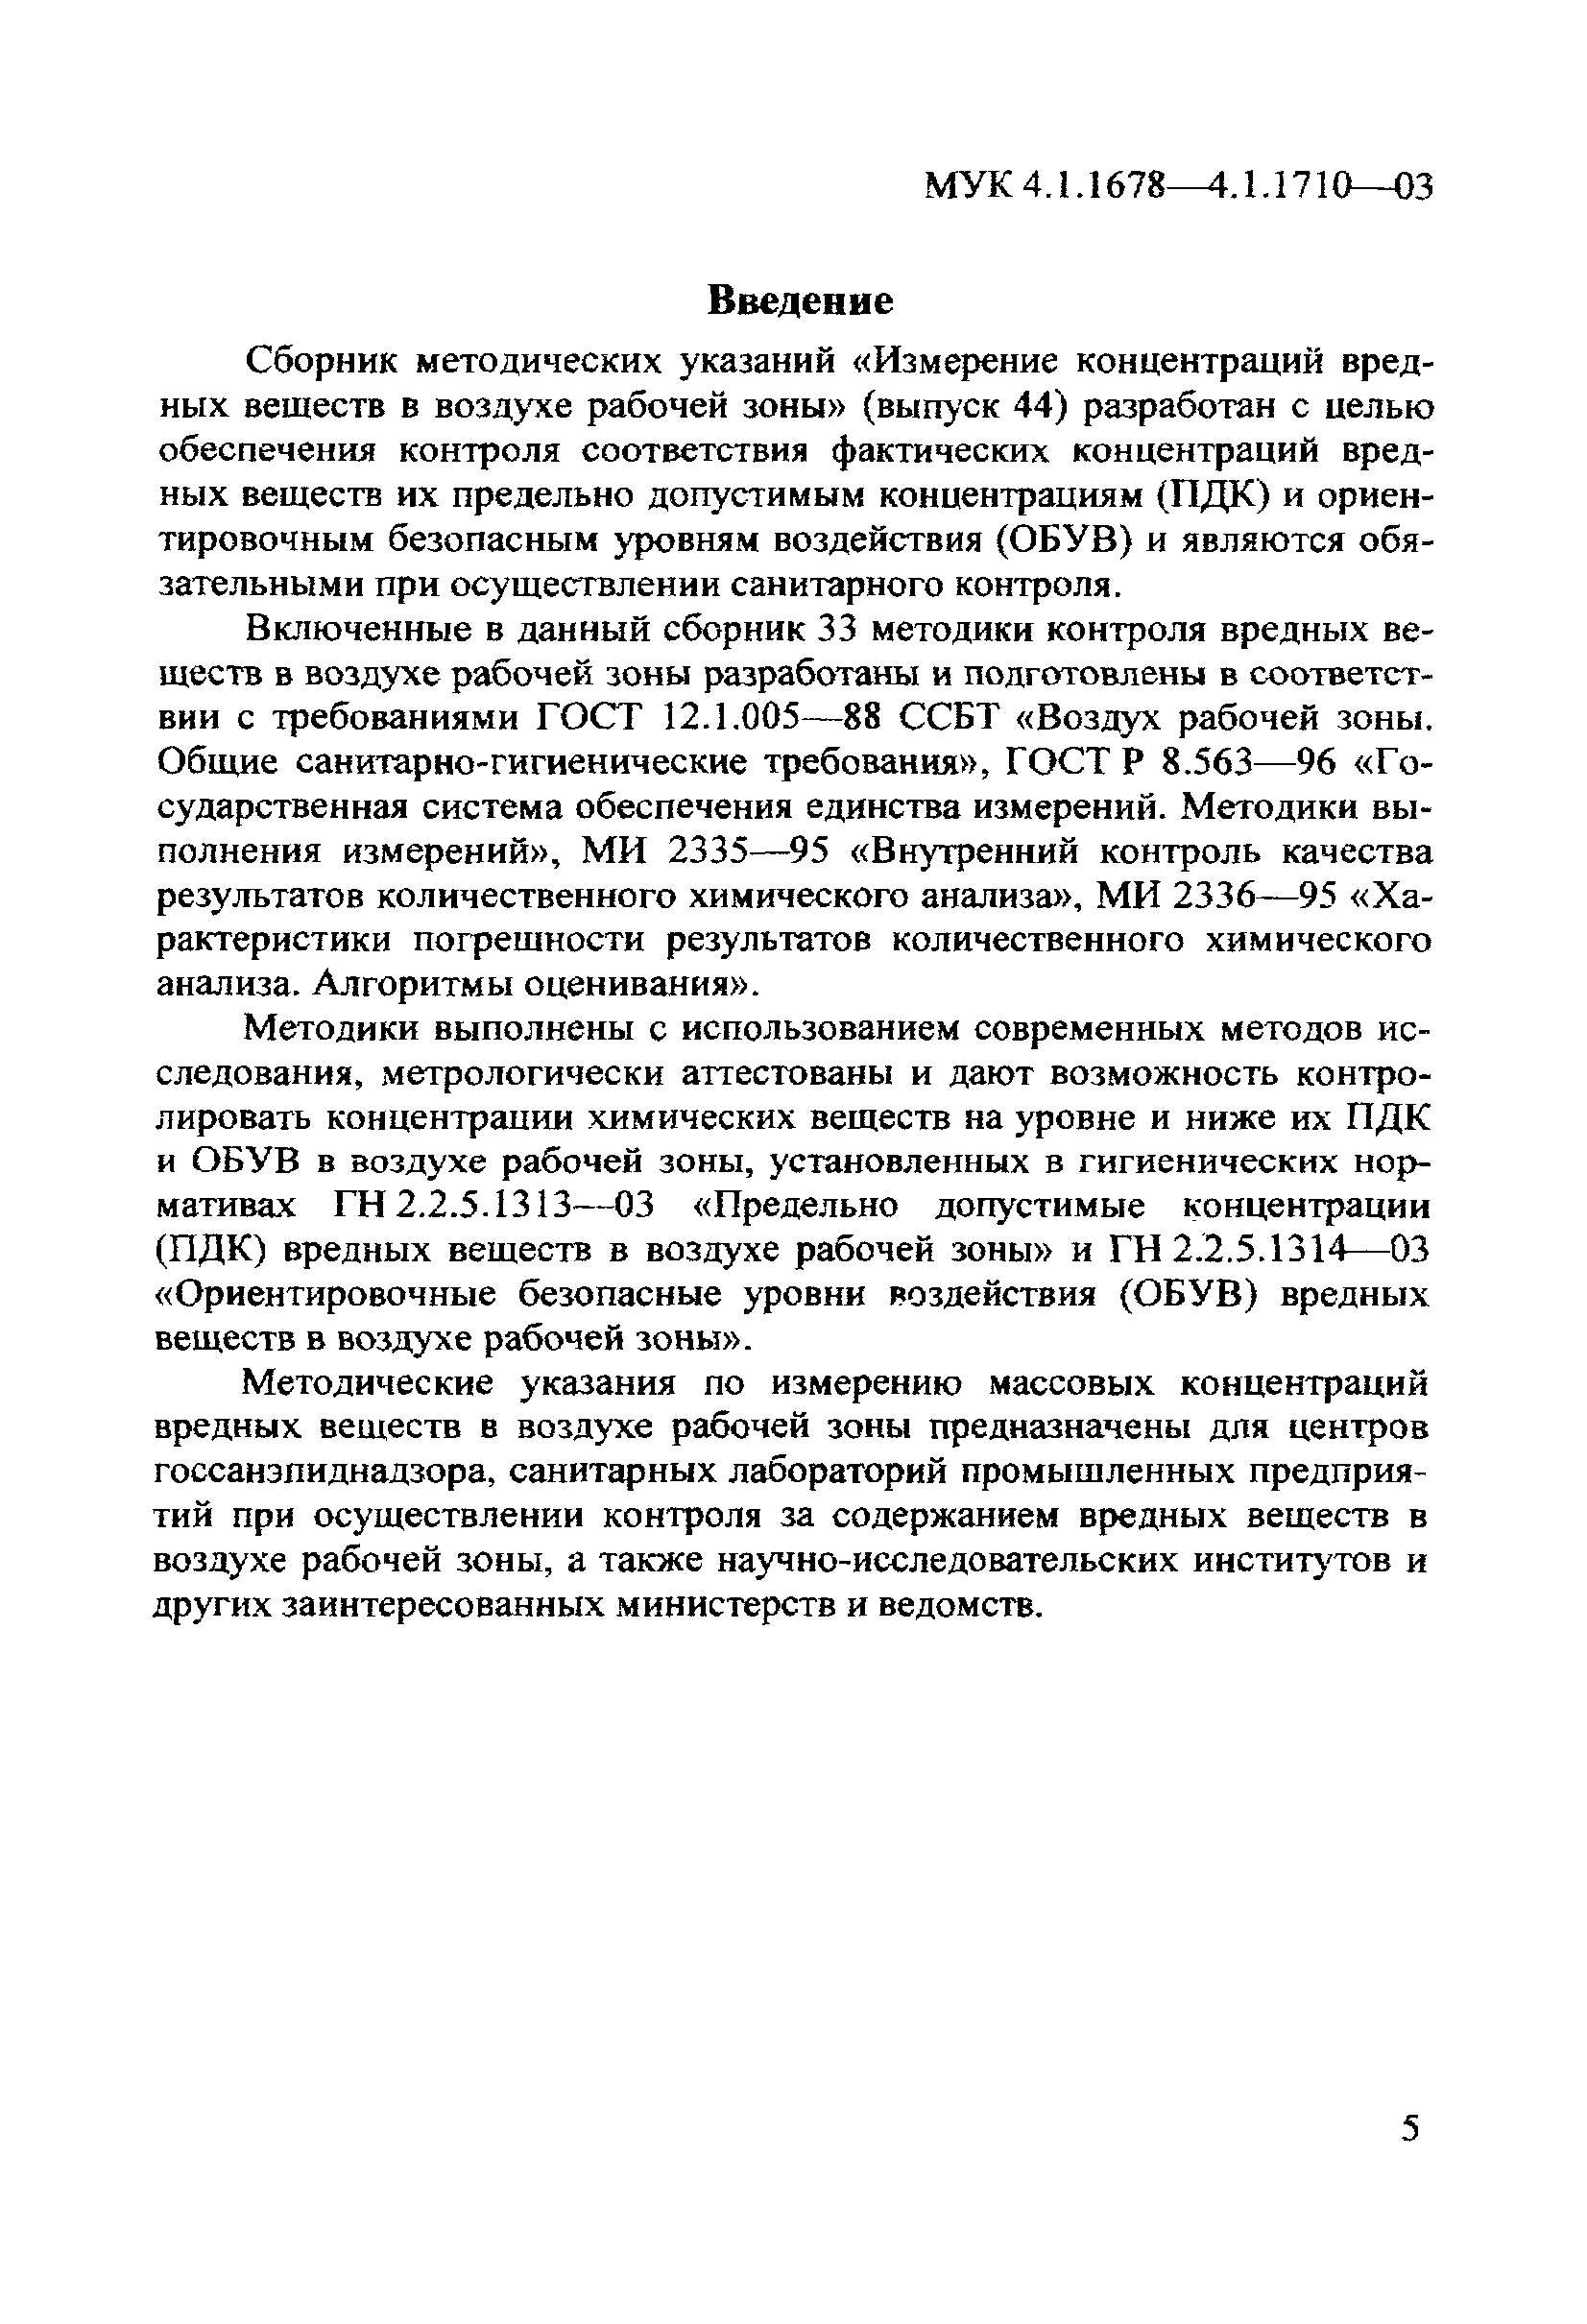 МУК 4.1.1698-03